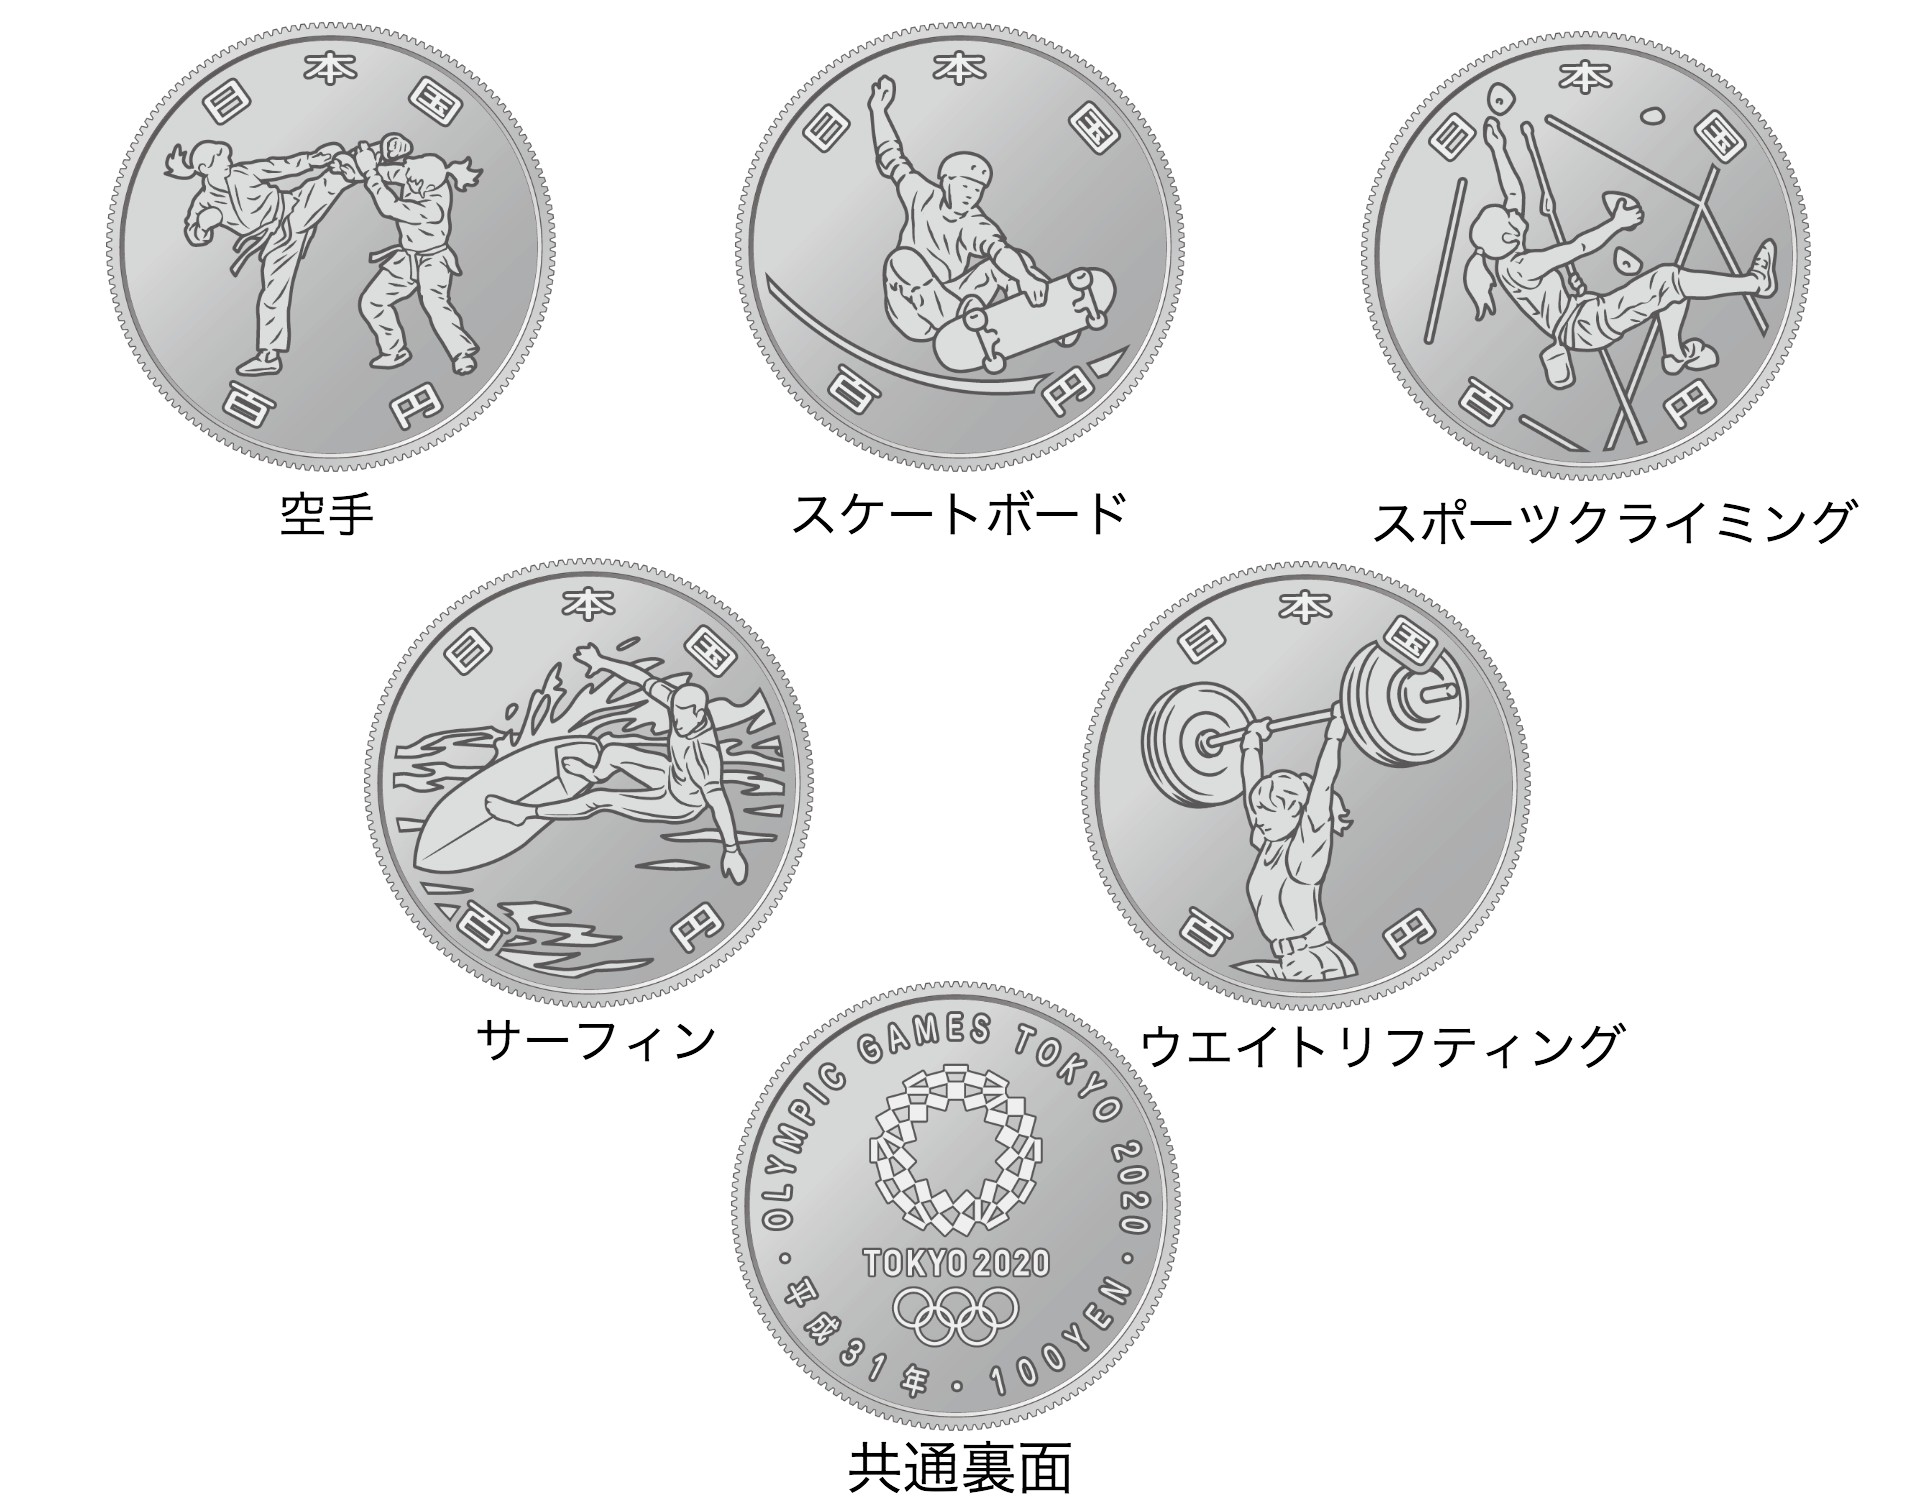 東京オリンピックとパラリンピックの記念貨幣が登場するよ！ 競技種目がデザインされています | Pouch［ポーチ］